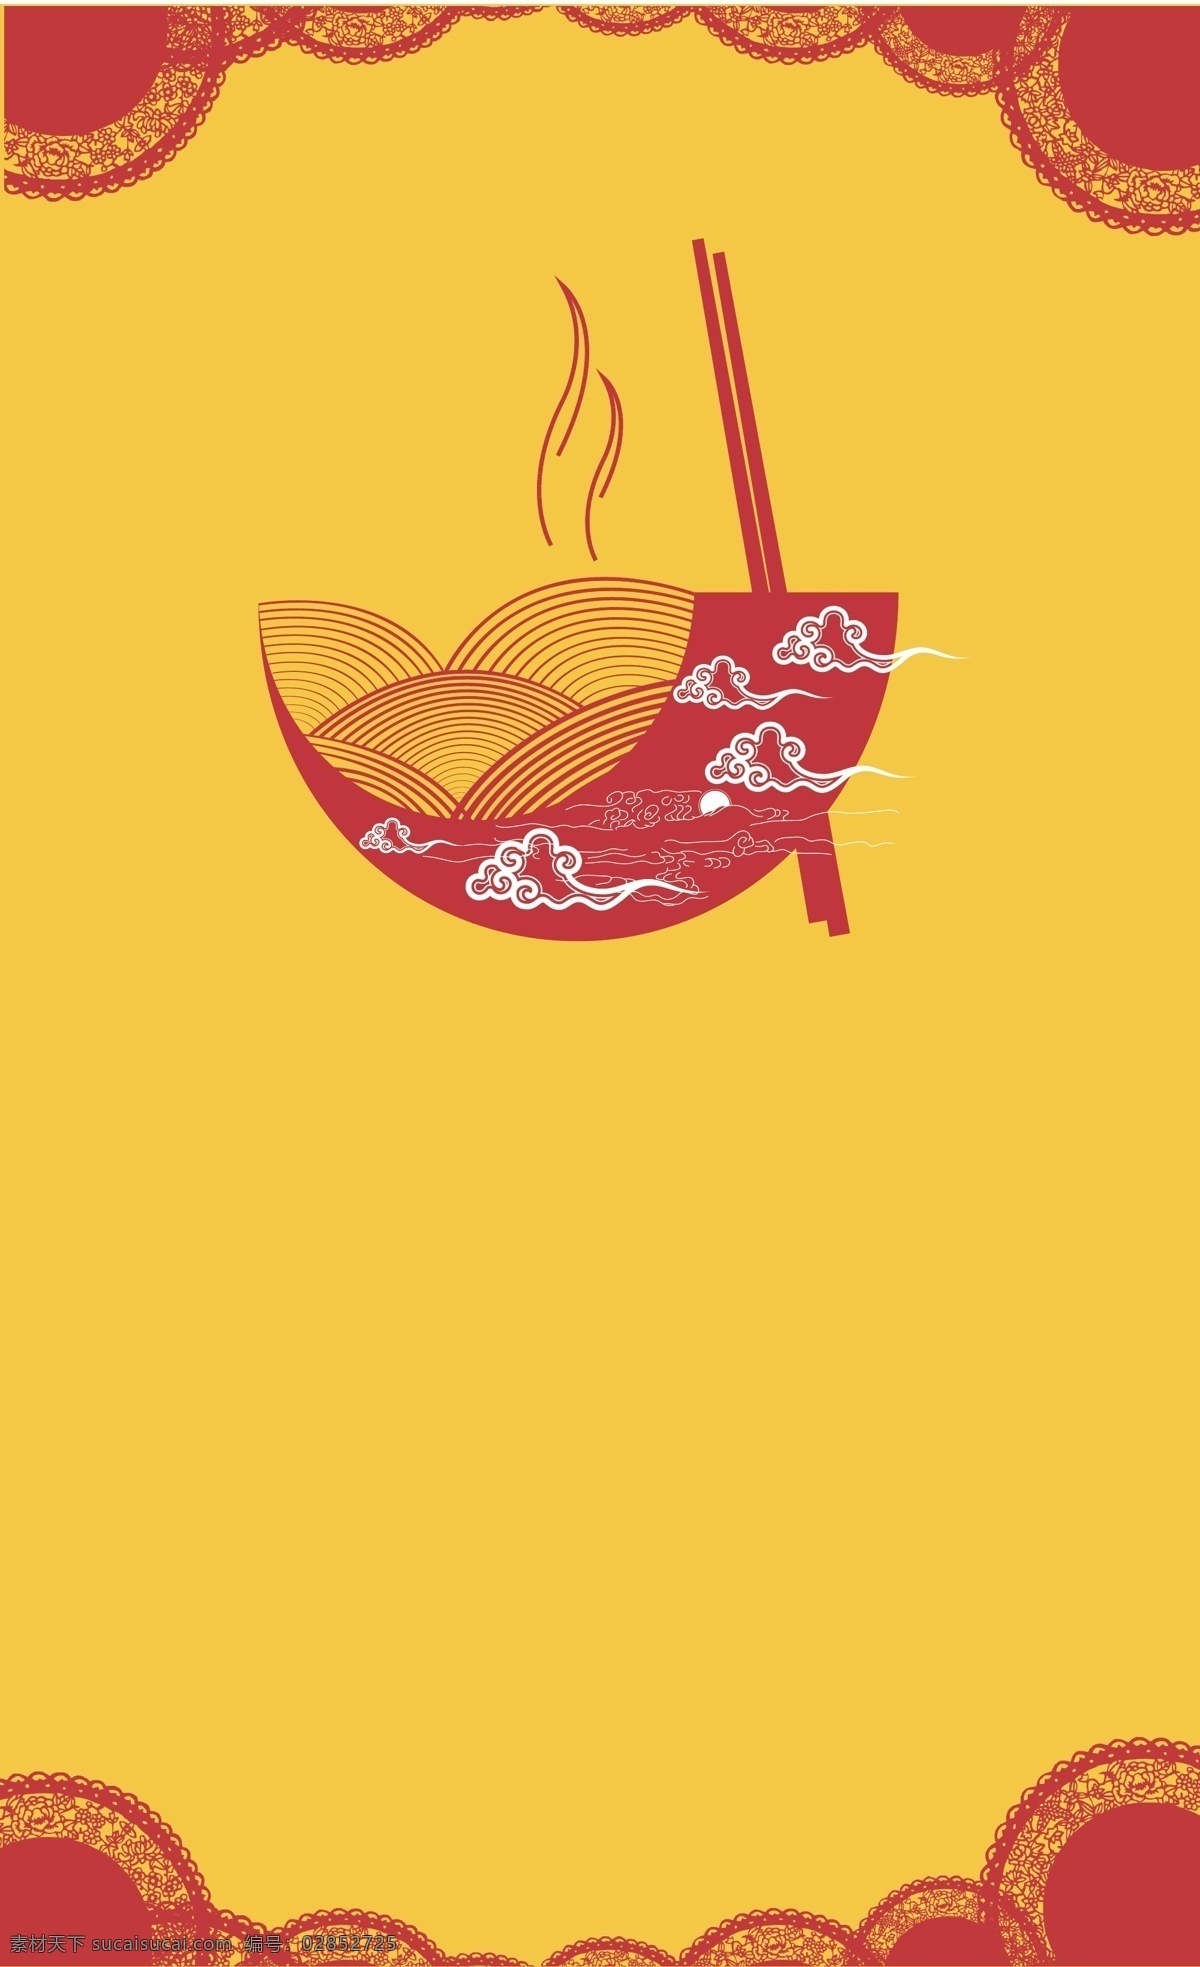 橘黄色 手绘 美食 背景 碗 卡通 矢量素材 海报 高清 设计图 温暖